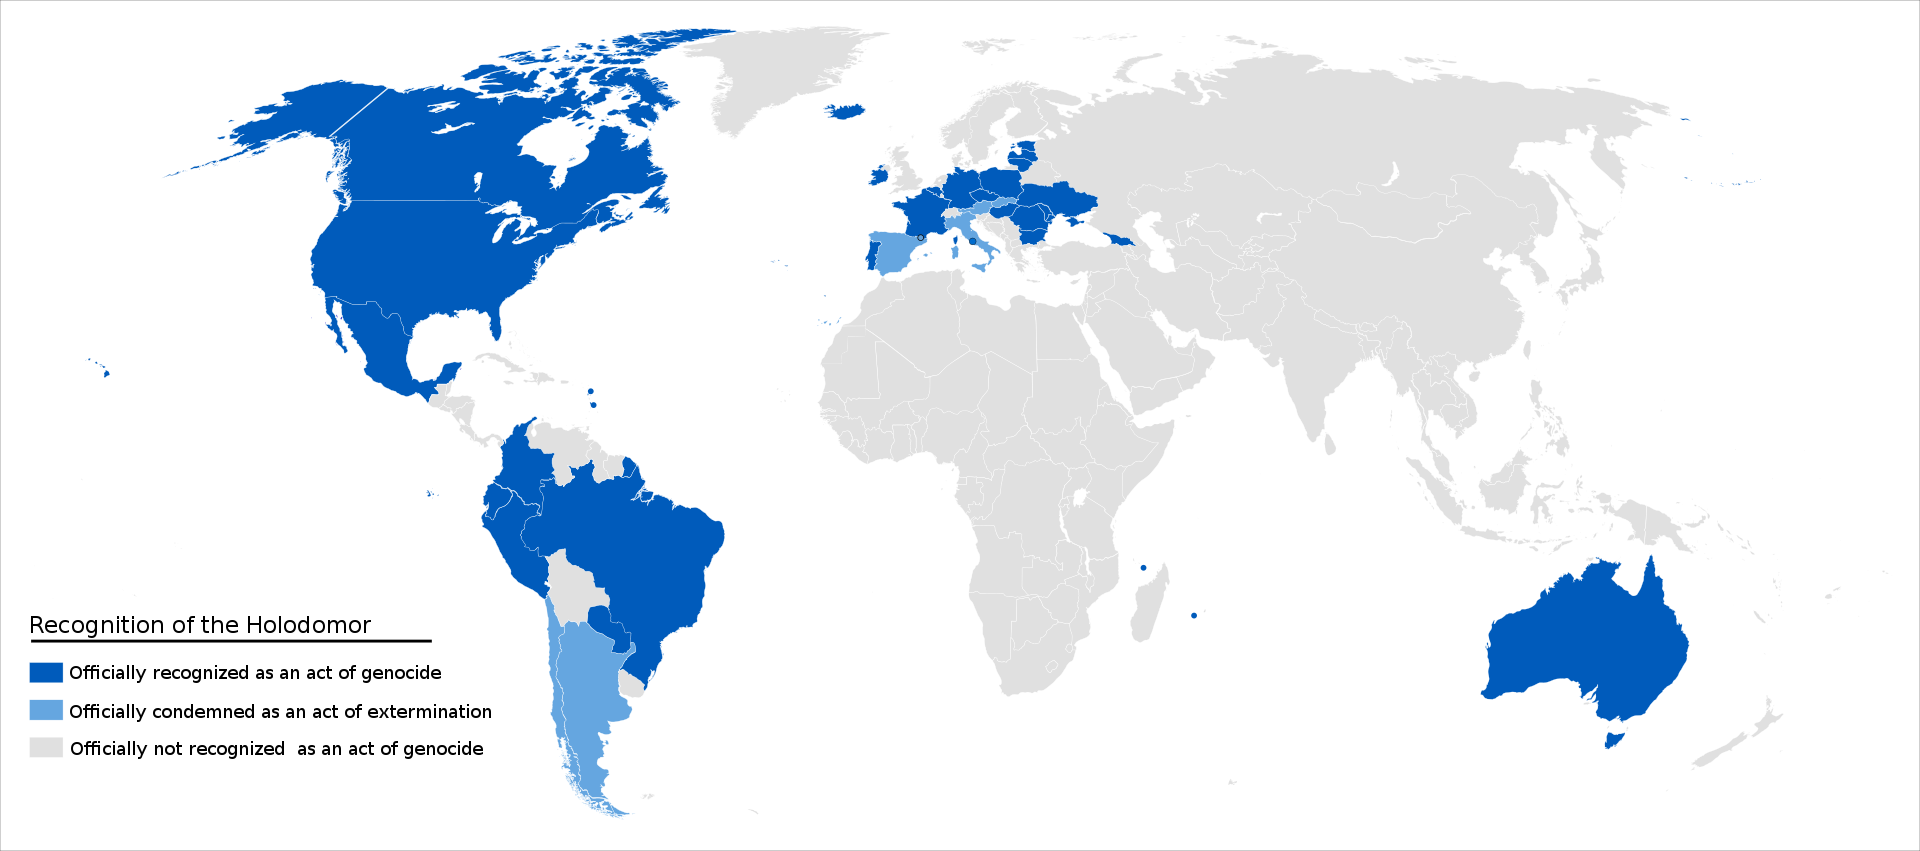 Страны, признавшие Голодомор актом геноцида, отмечены темно-синим цветом